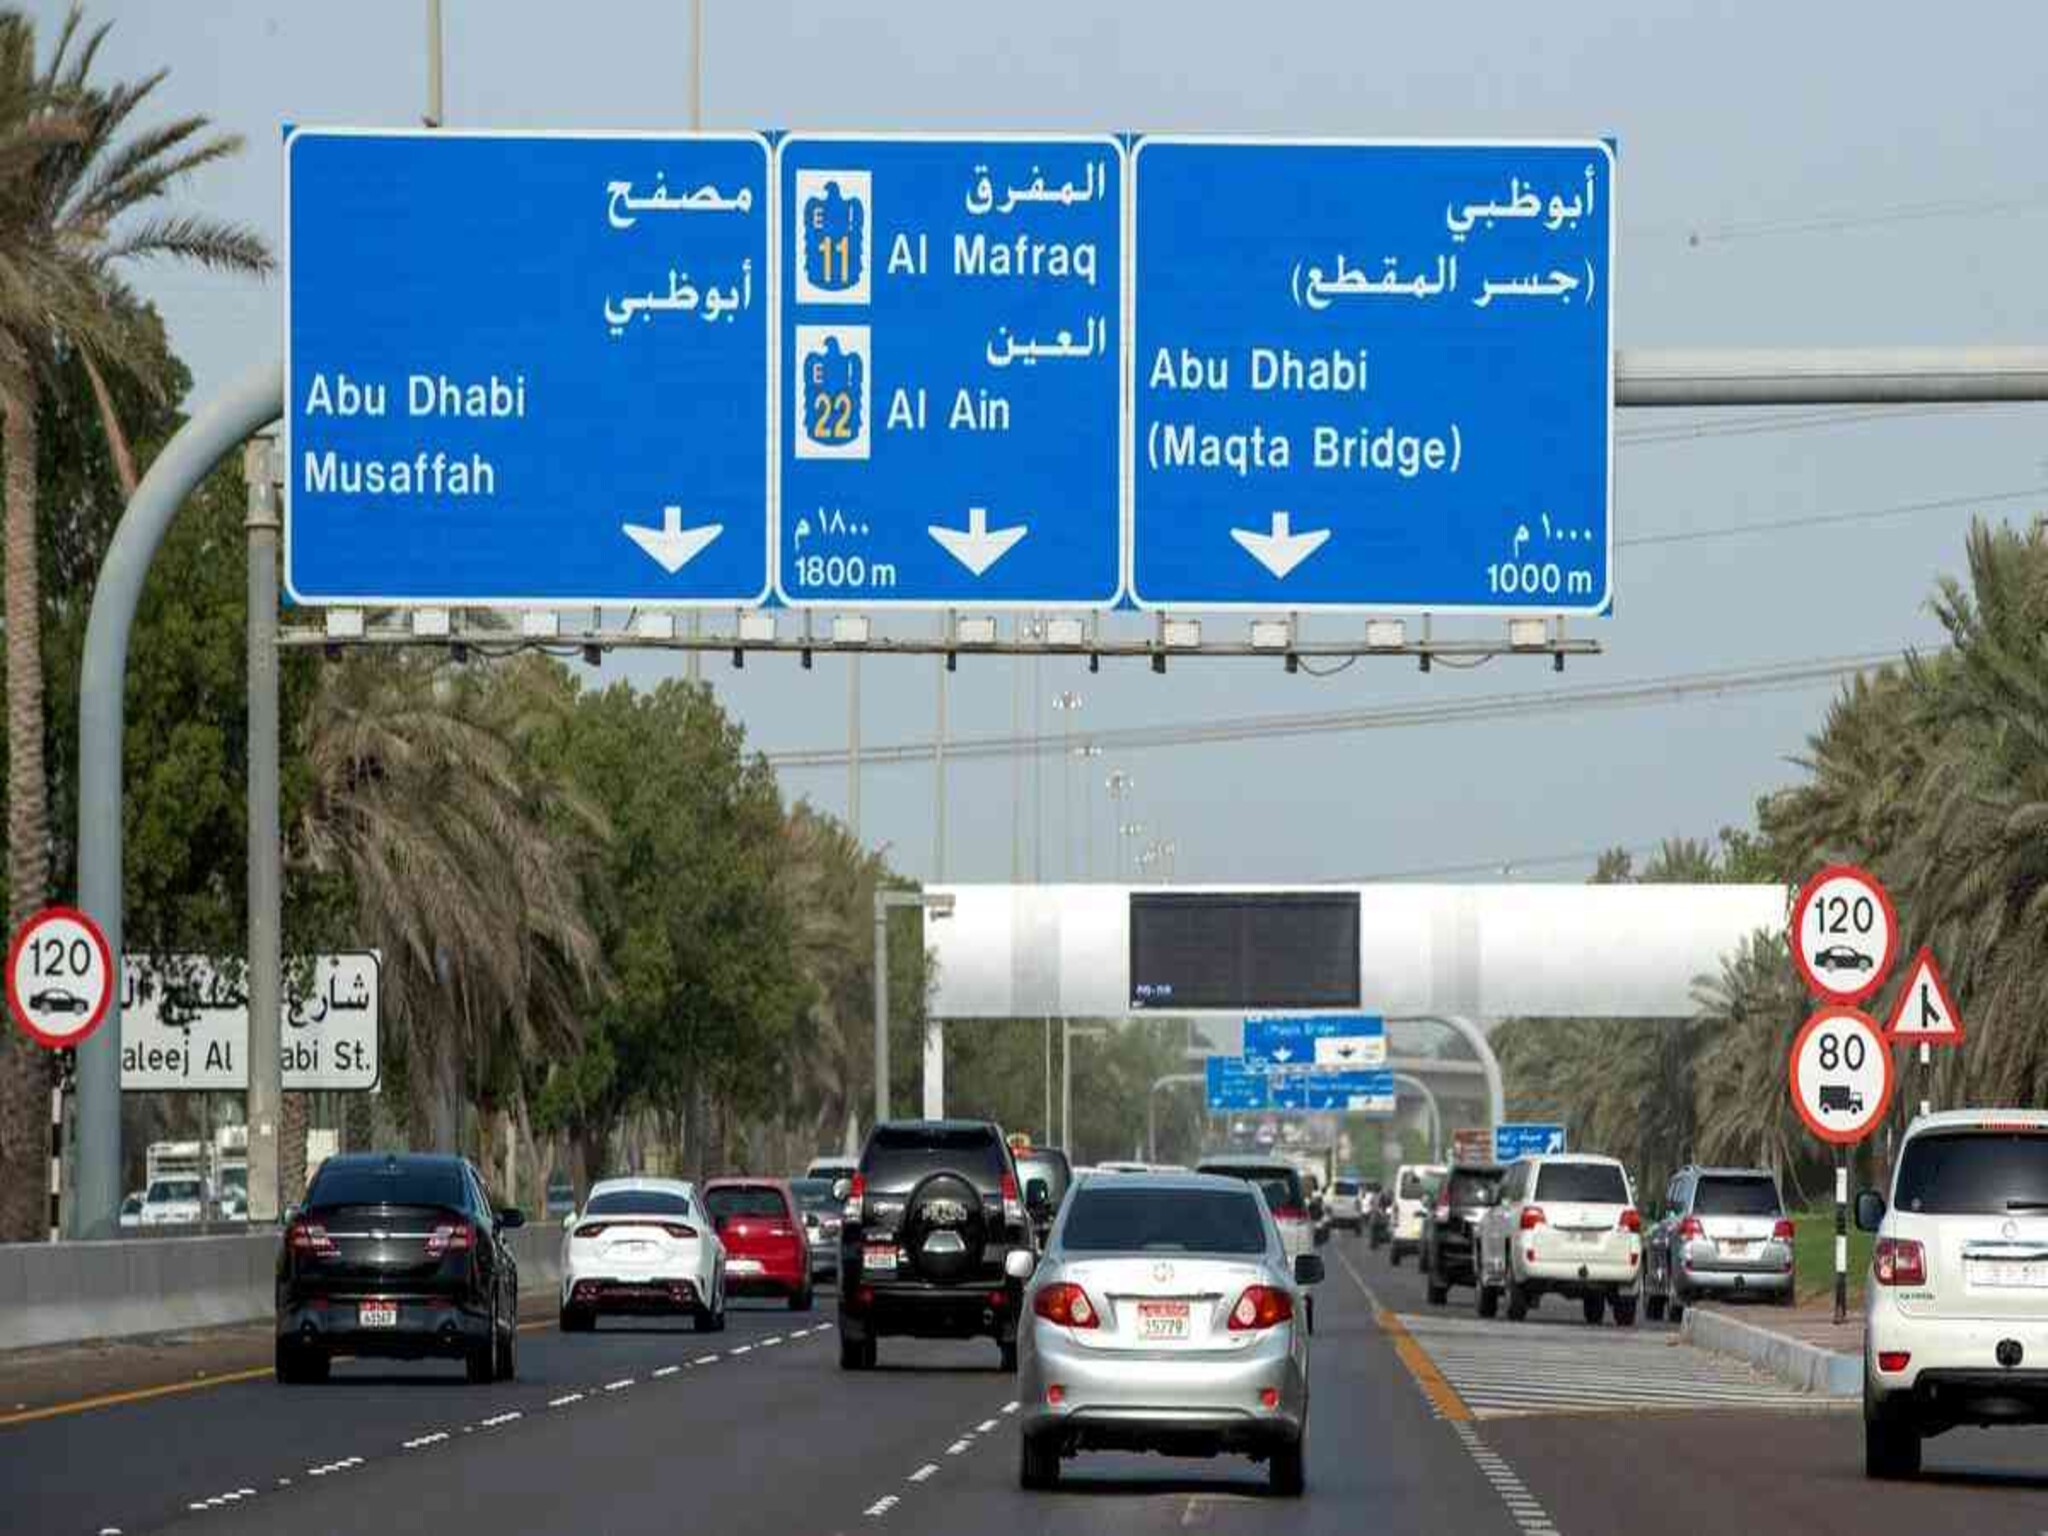 إلغاء المخالفات المرورية لبعض المقيمين في الإمارات من ٢٠١٨ إلى ٢٠٢٣ 